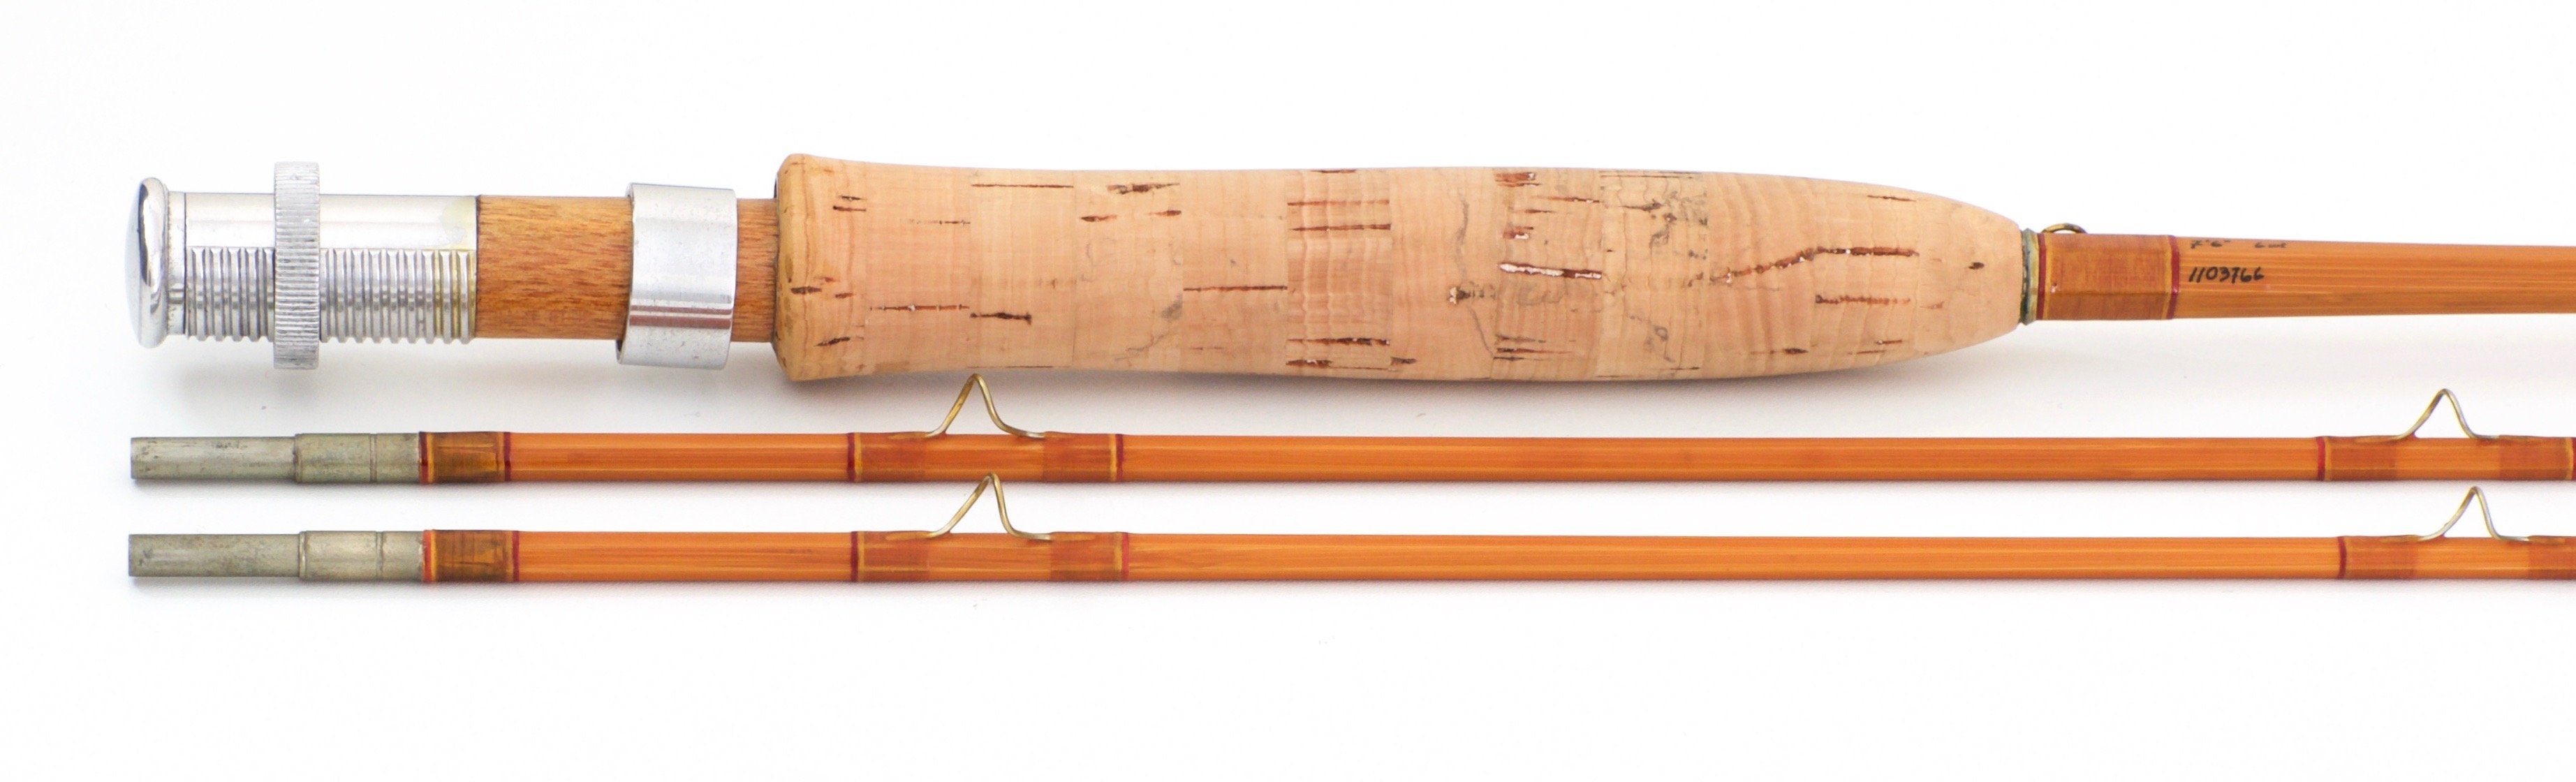 Frank, Jim - 7'6 6wt Bamboo Rod - Spinoza Rod Company